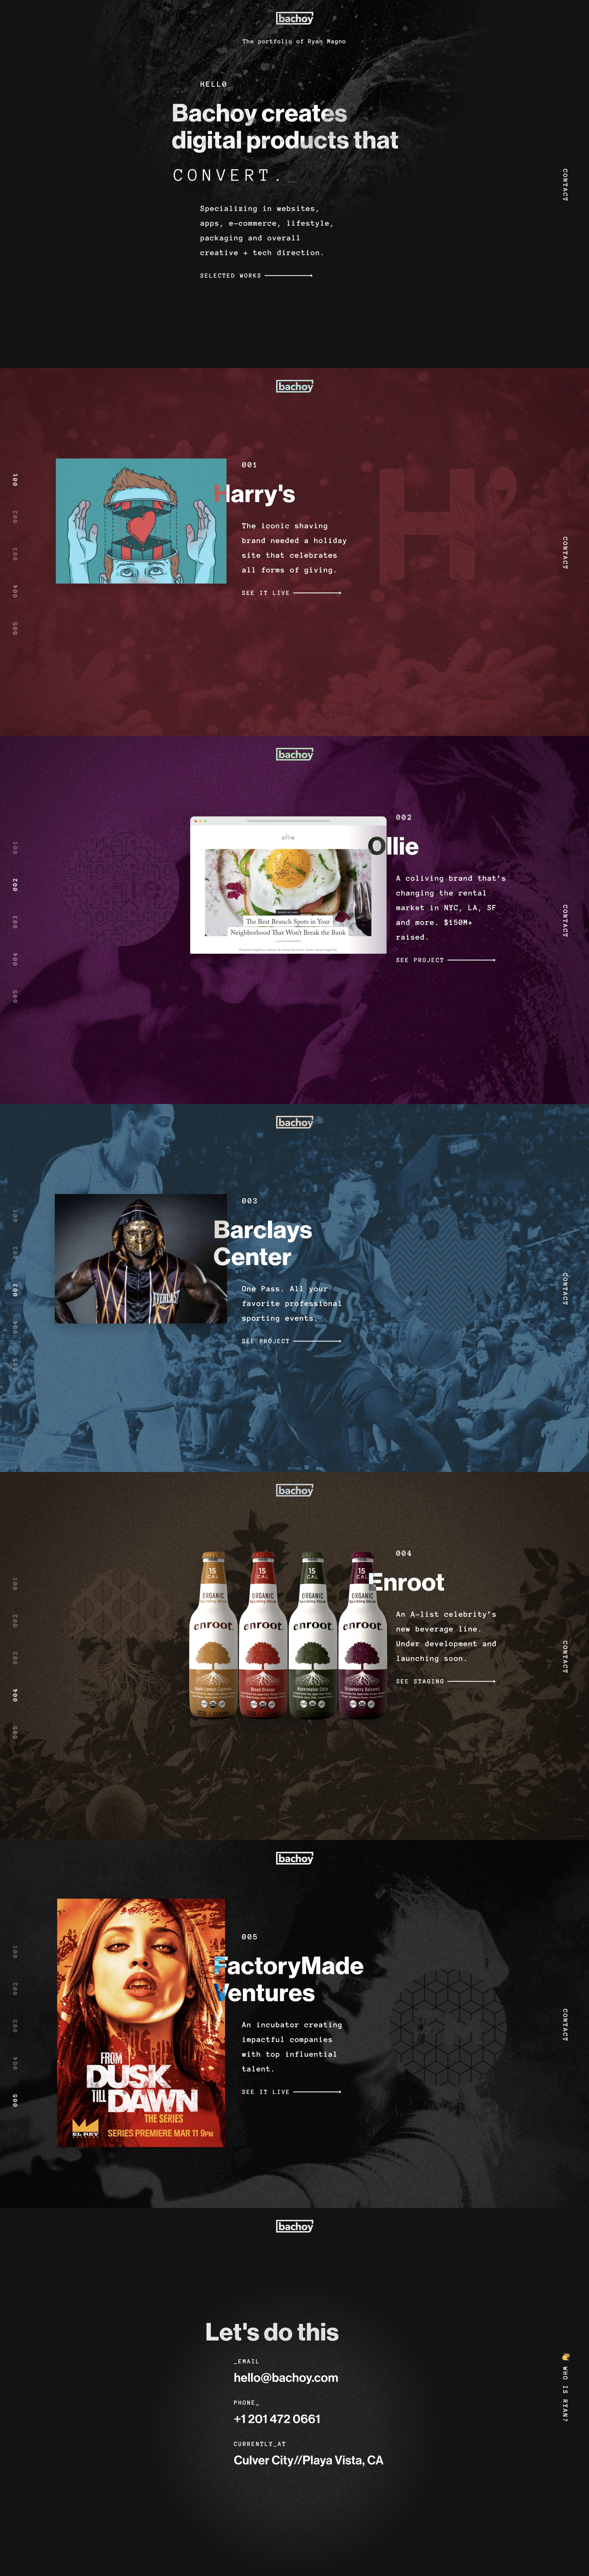 Bachoy Website Screenshot